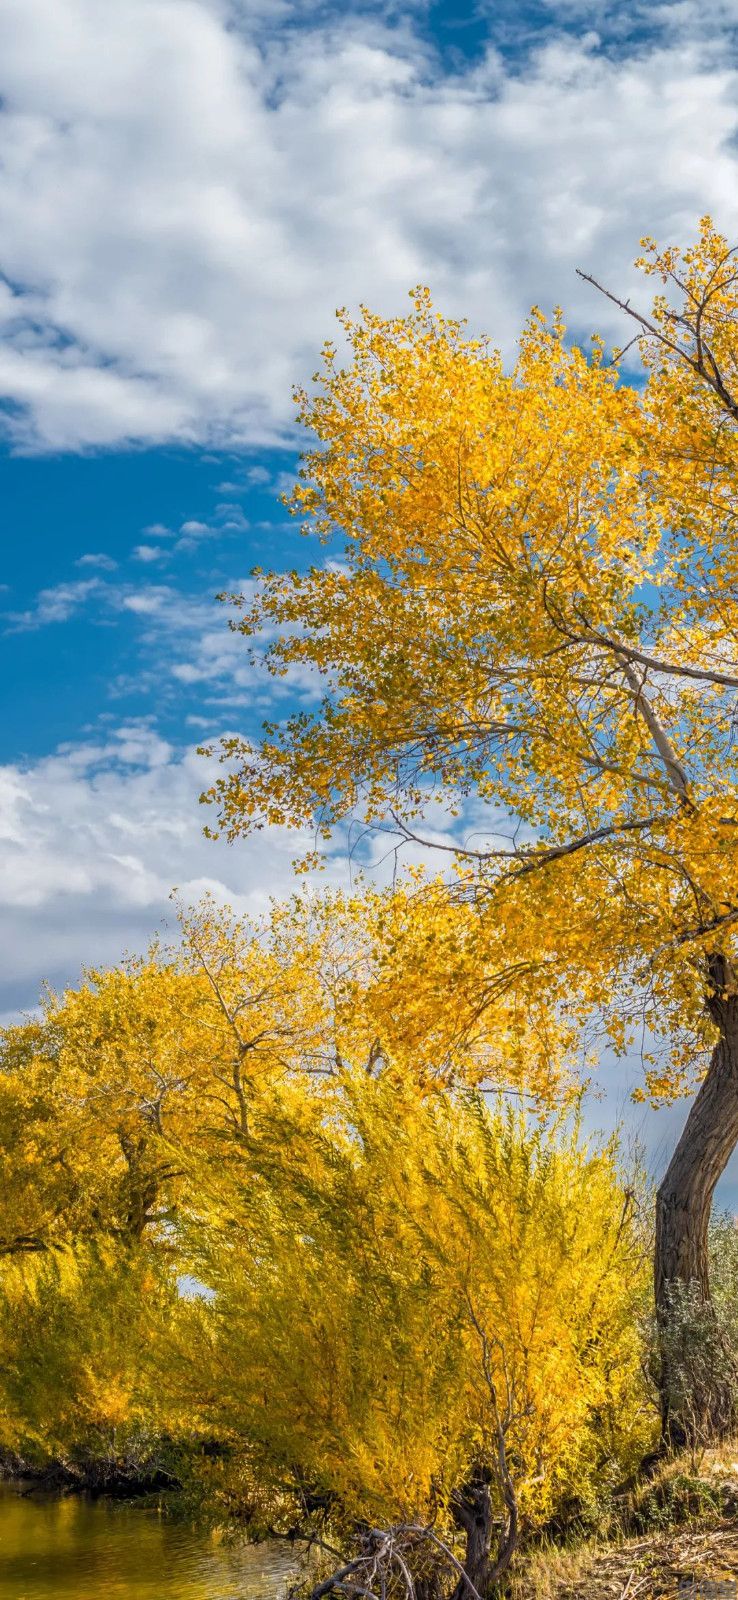 金黄色的秋天风景手机壁纸高清竖屏图片大全集(图2)